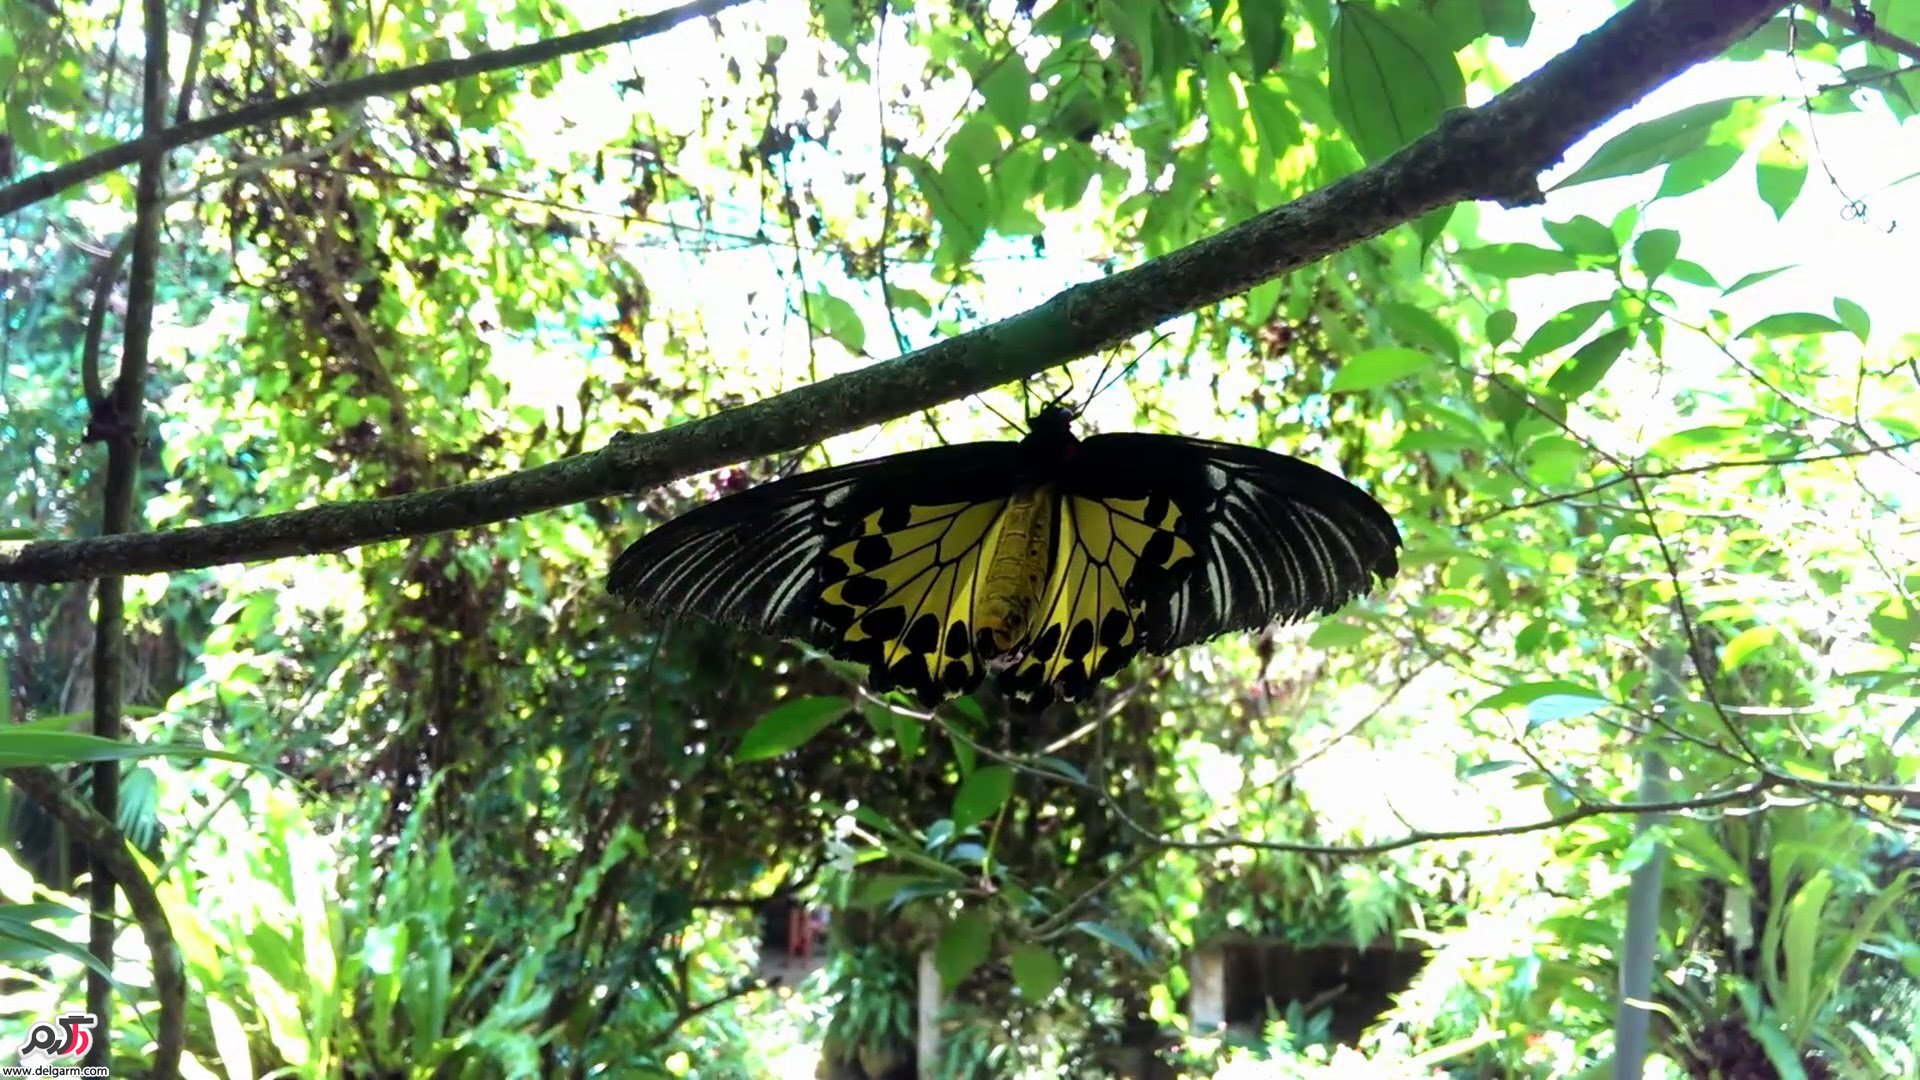  پارک پروانه های کوالالامپور